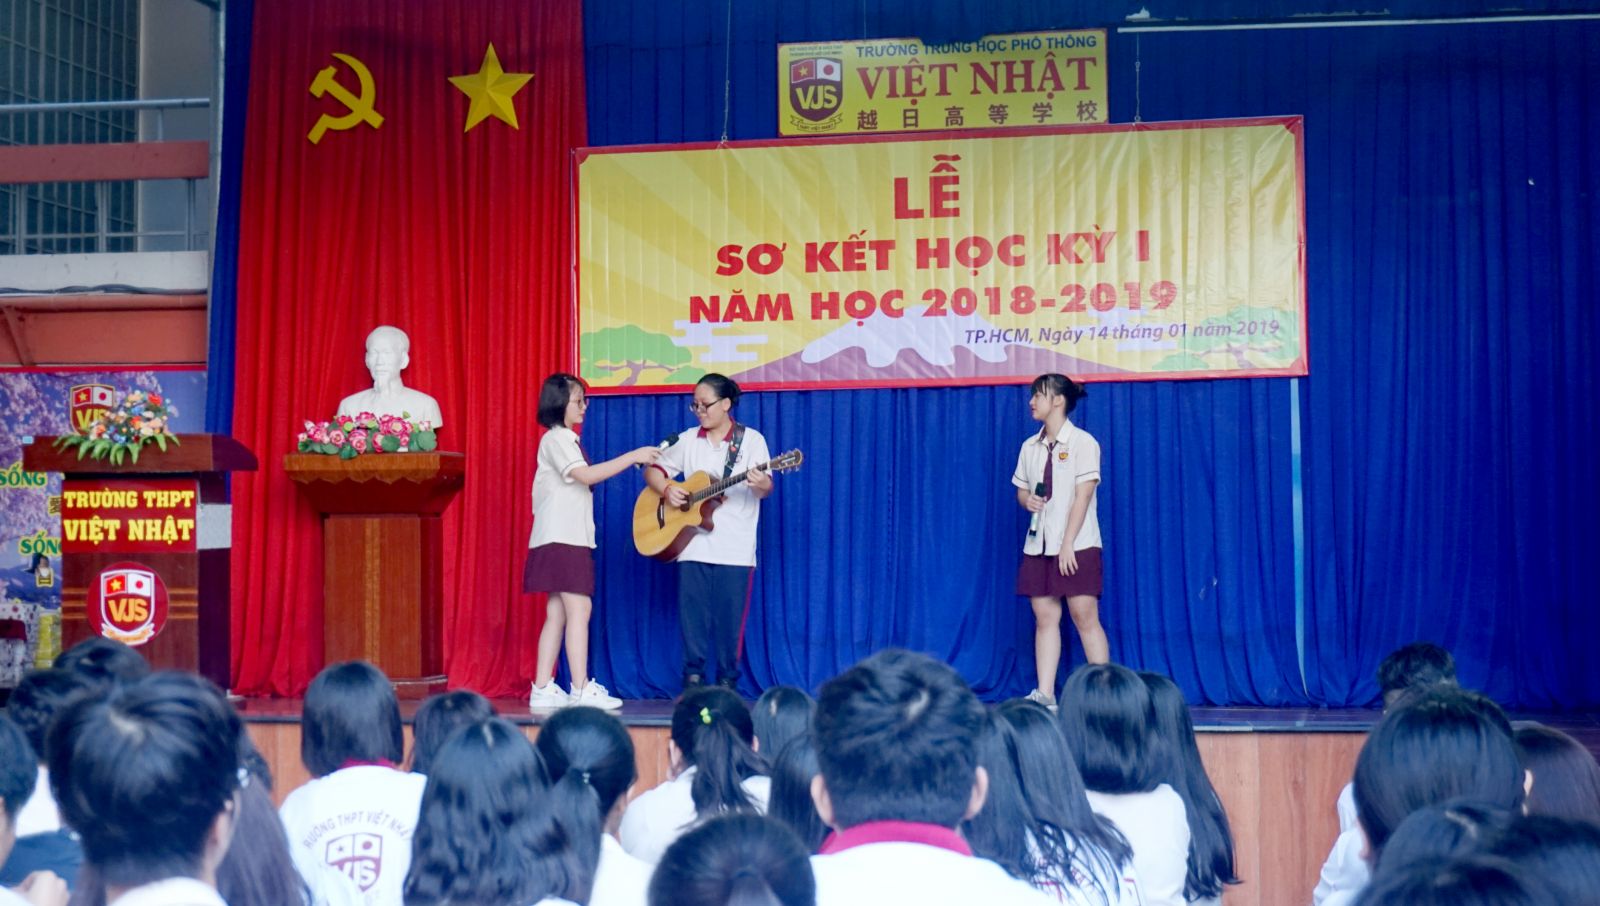 Truong THPT Viet Nhat So ket hoc ky 1 2018-2019